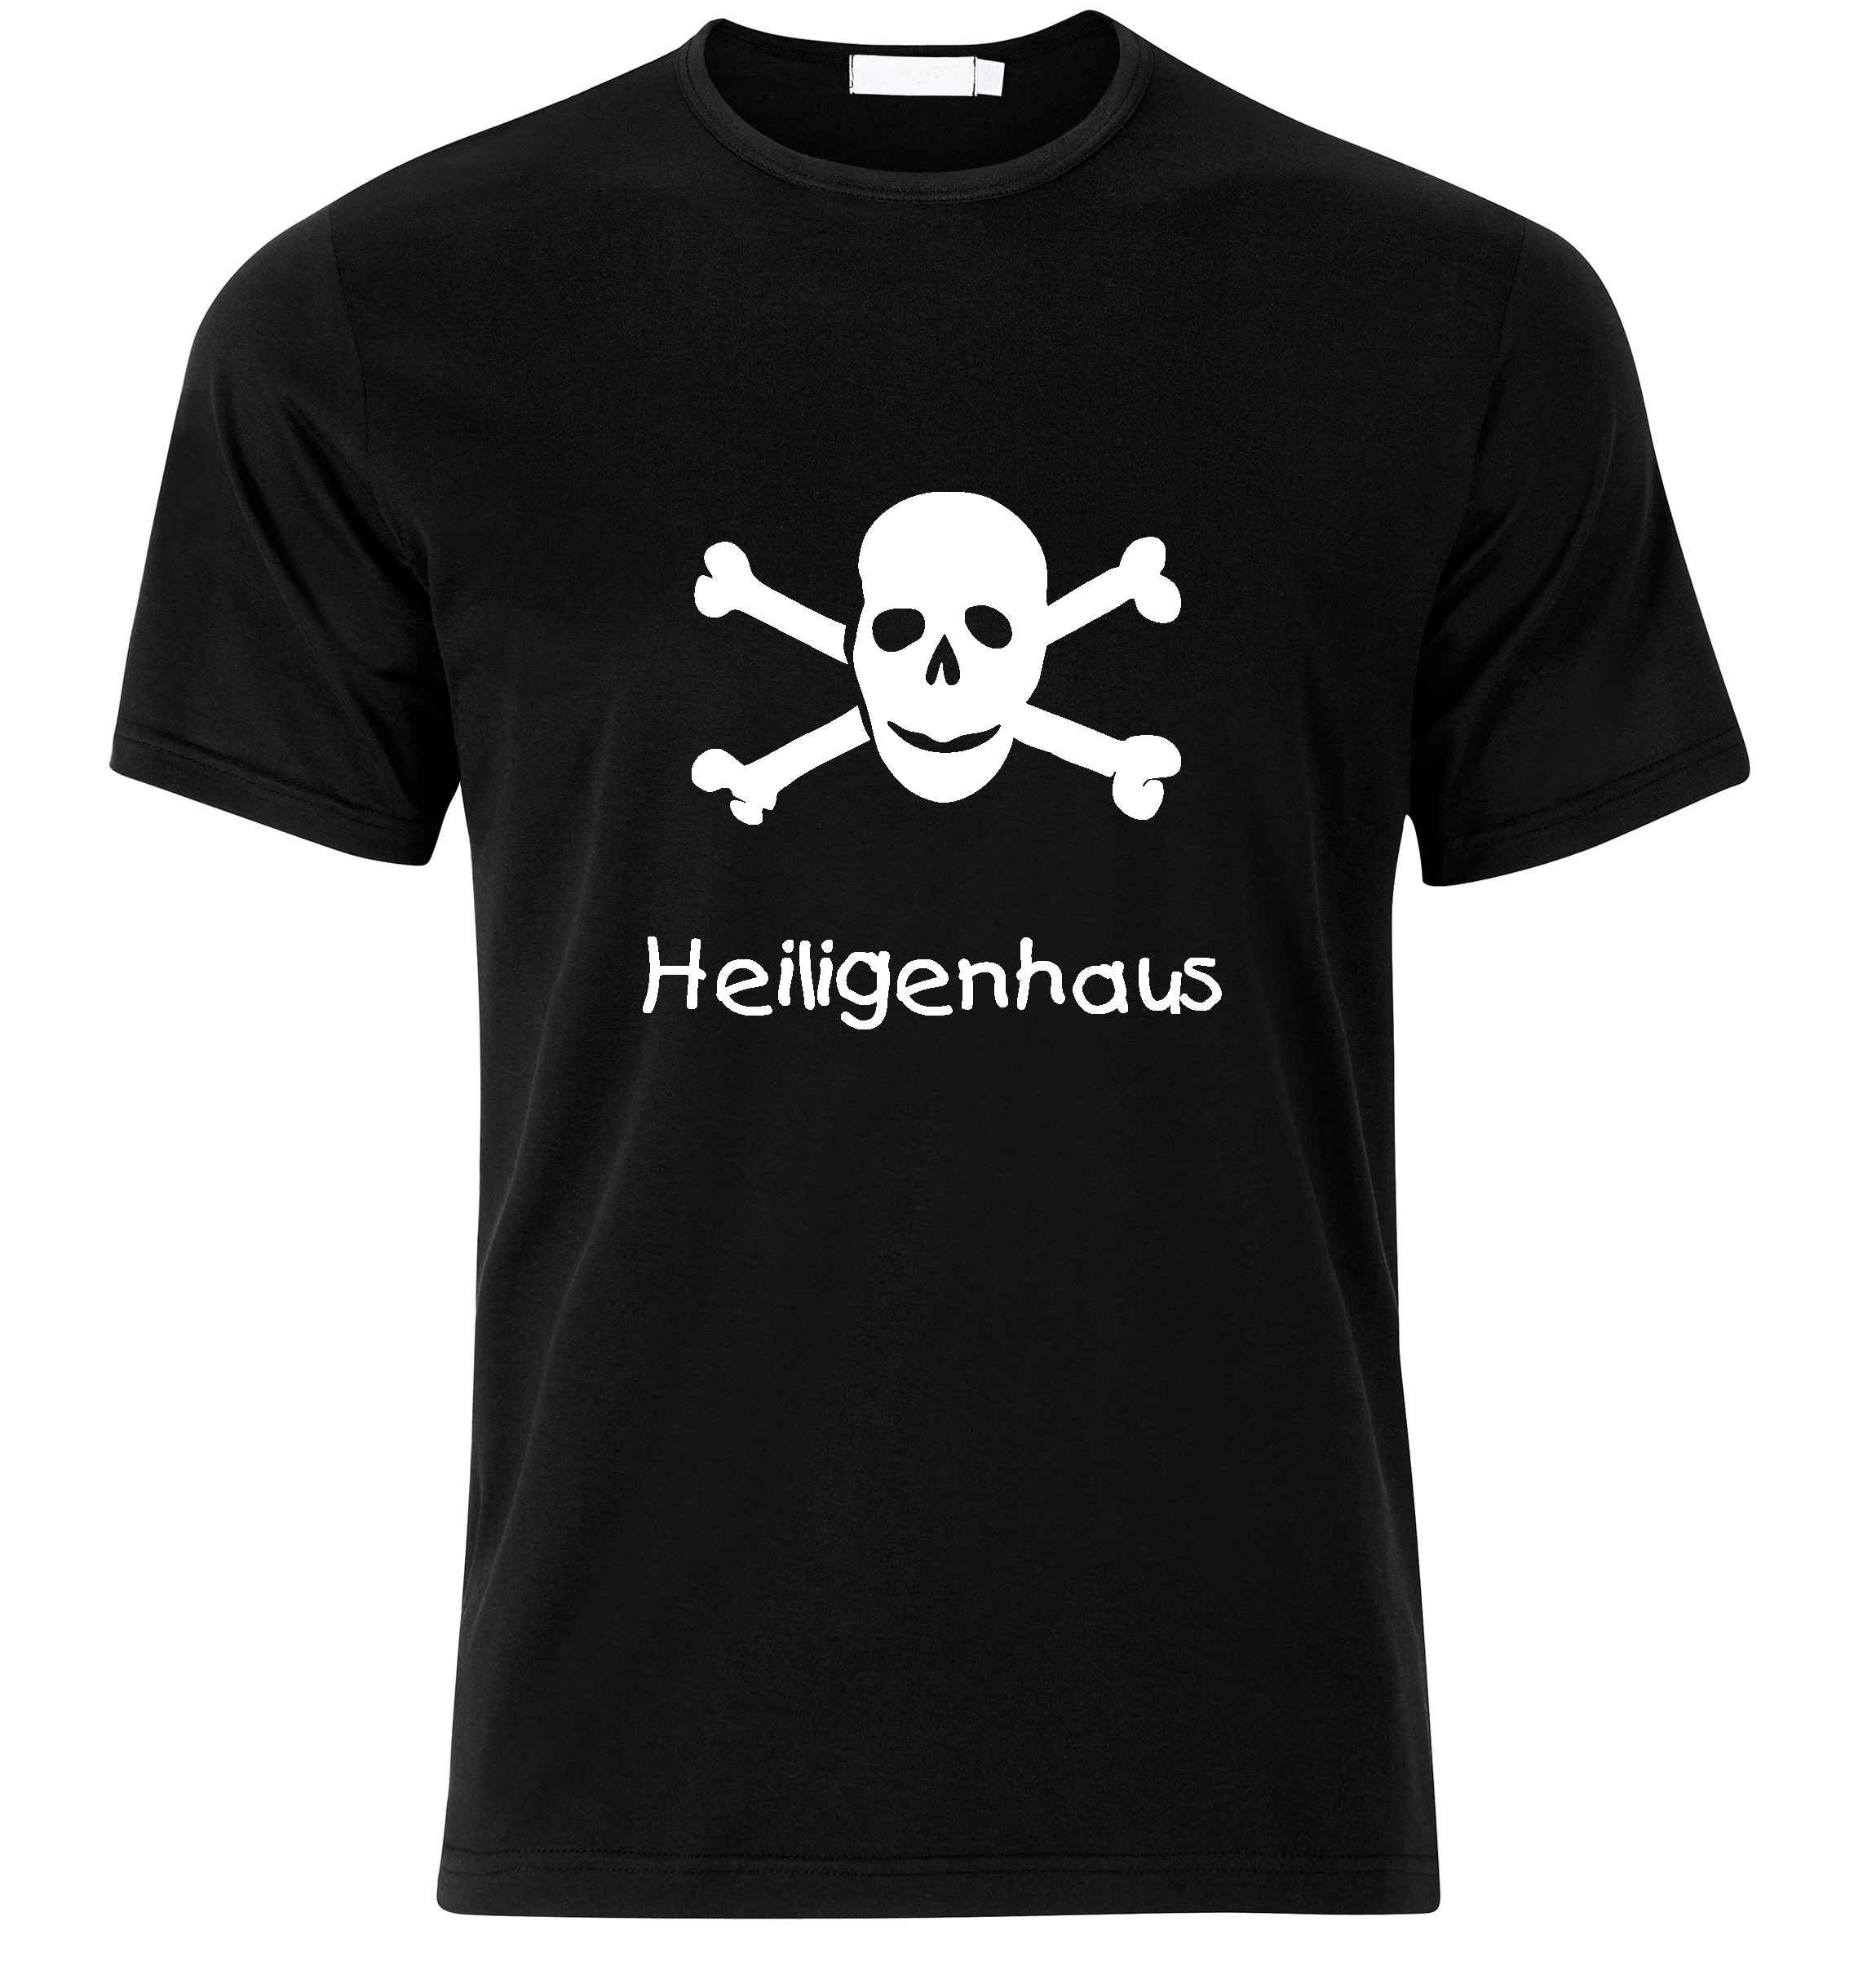 T-Shirt Heiligenhaus Jolly Roger, Totenkopf